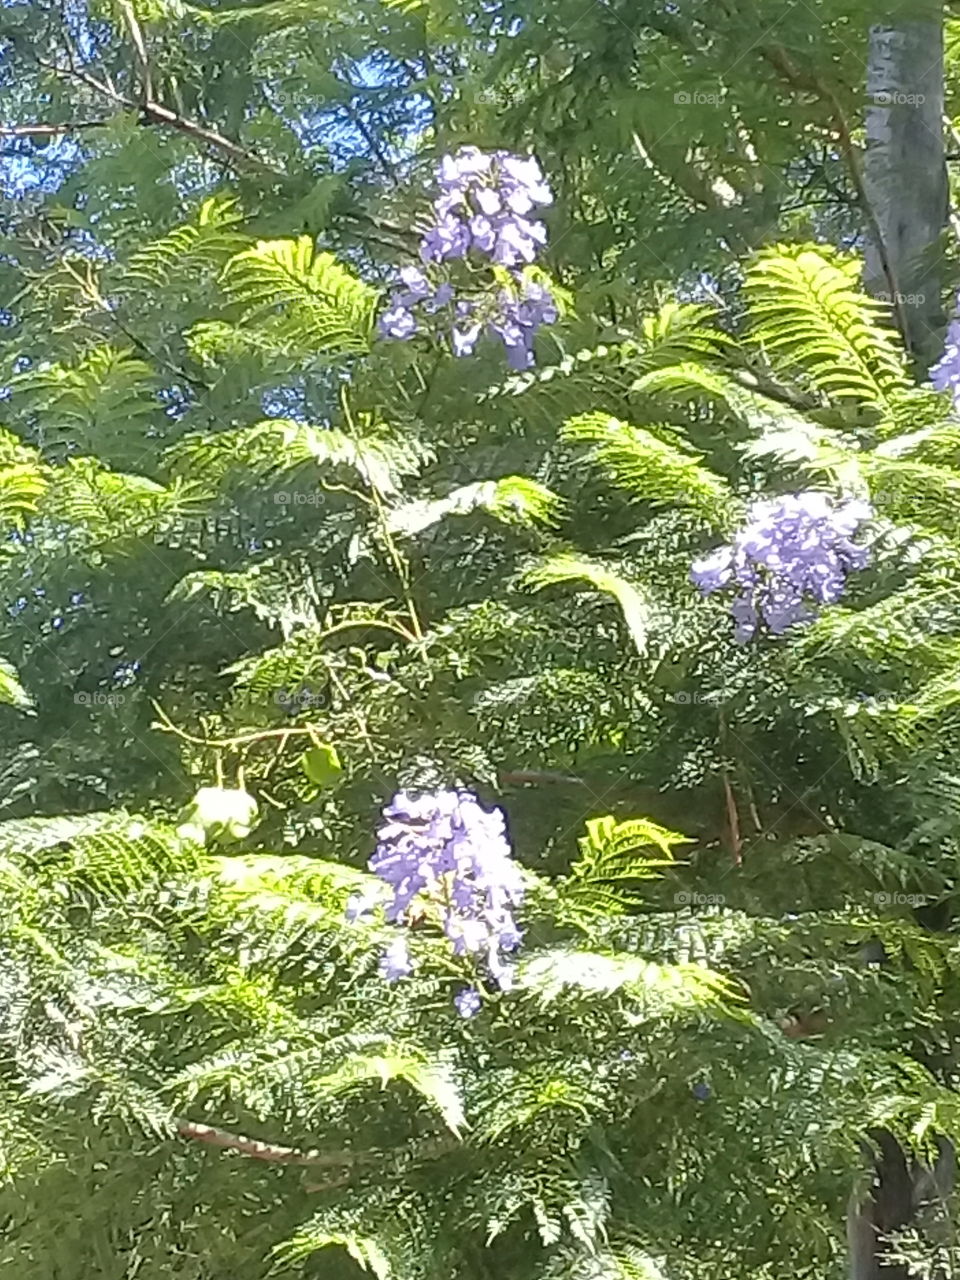 llamativo árbol añoso con flores en racimos de color lila resaltando en un fondo de follaje verde claro